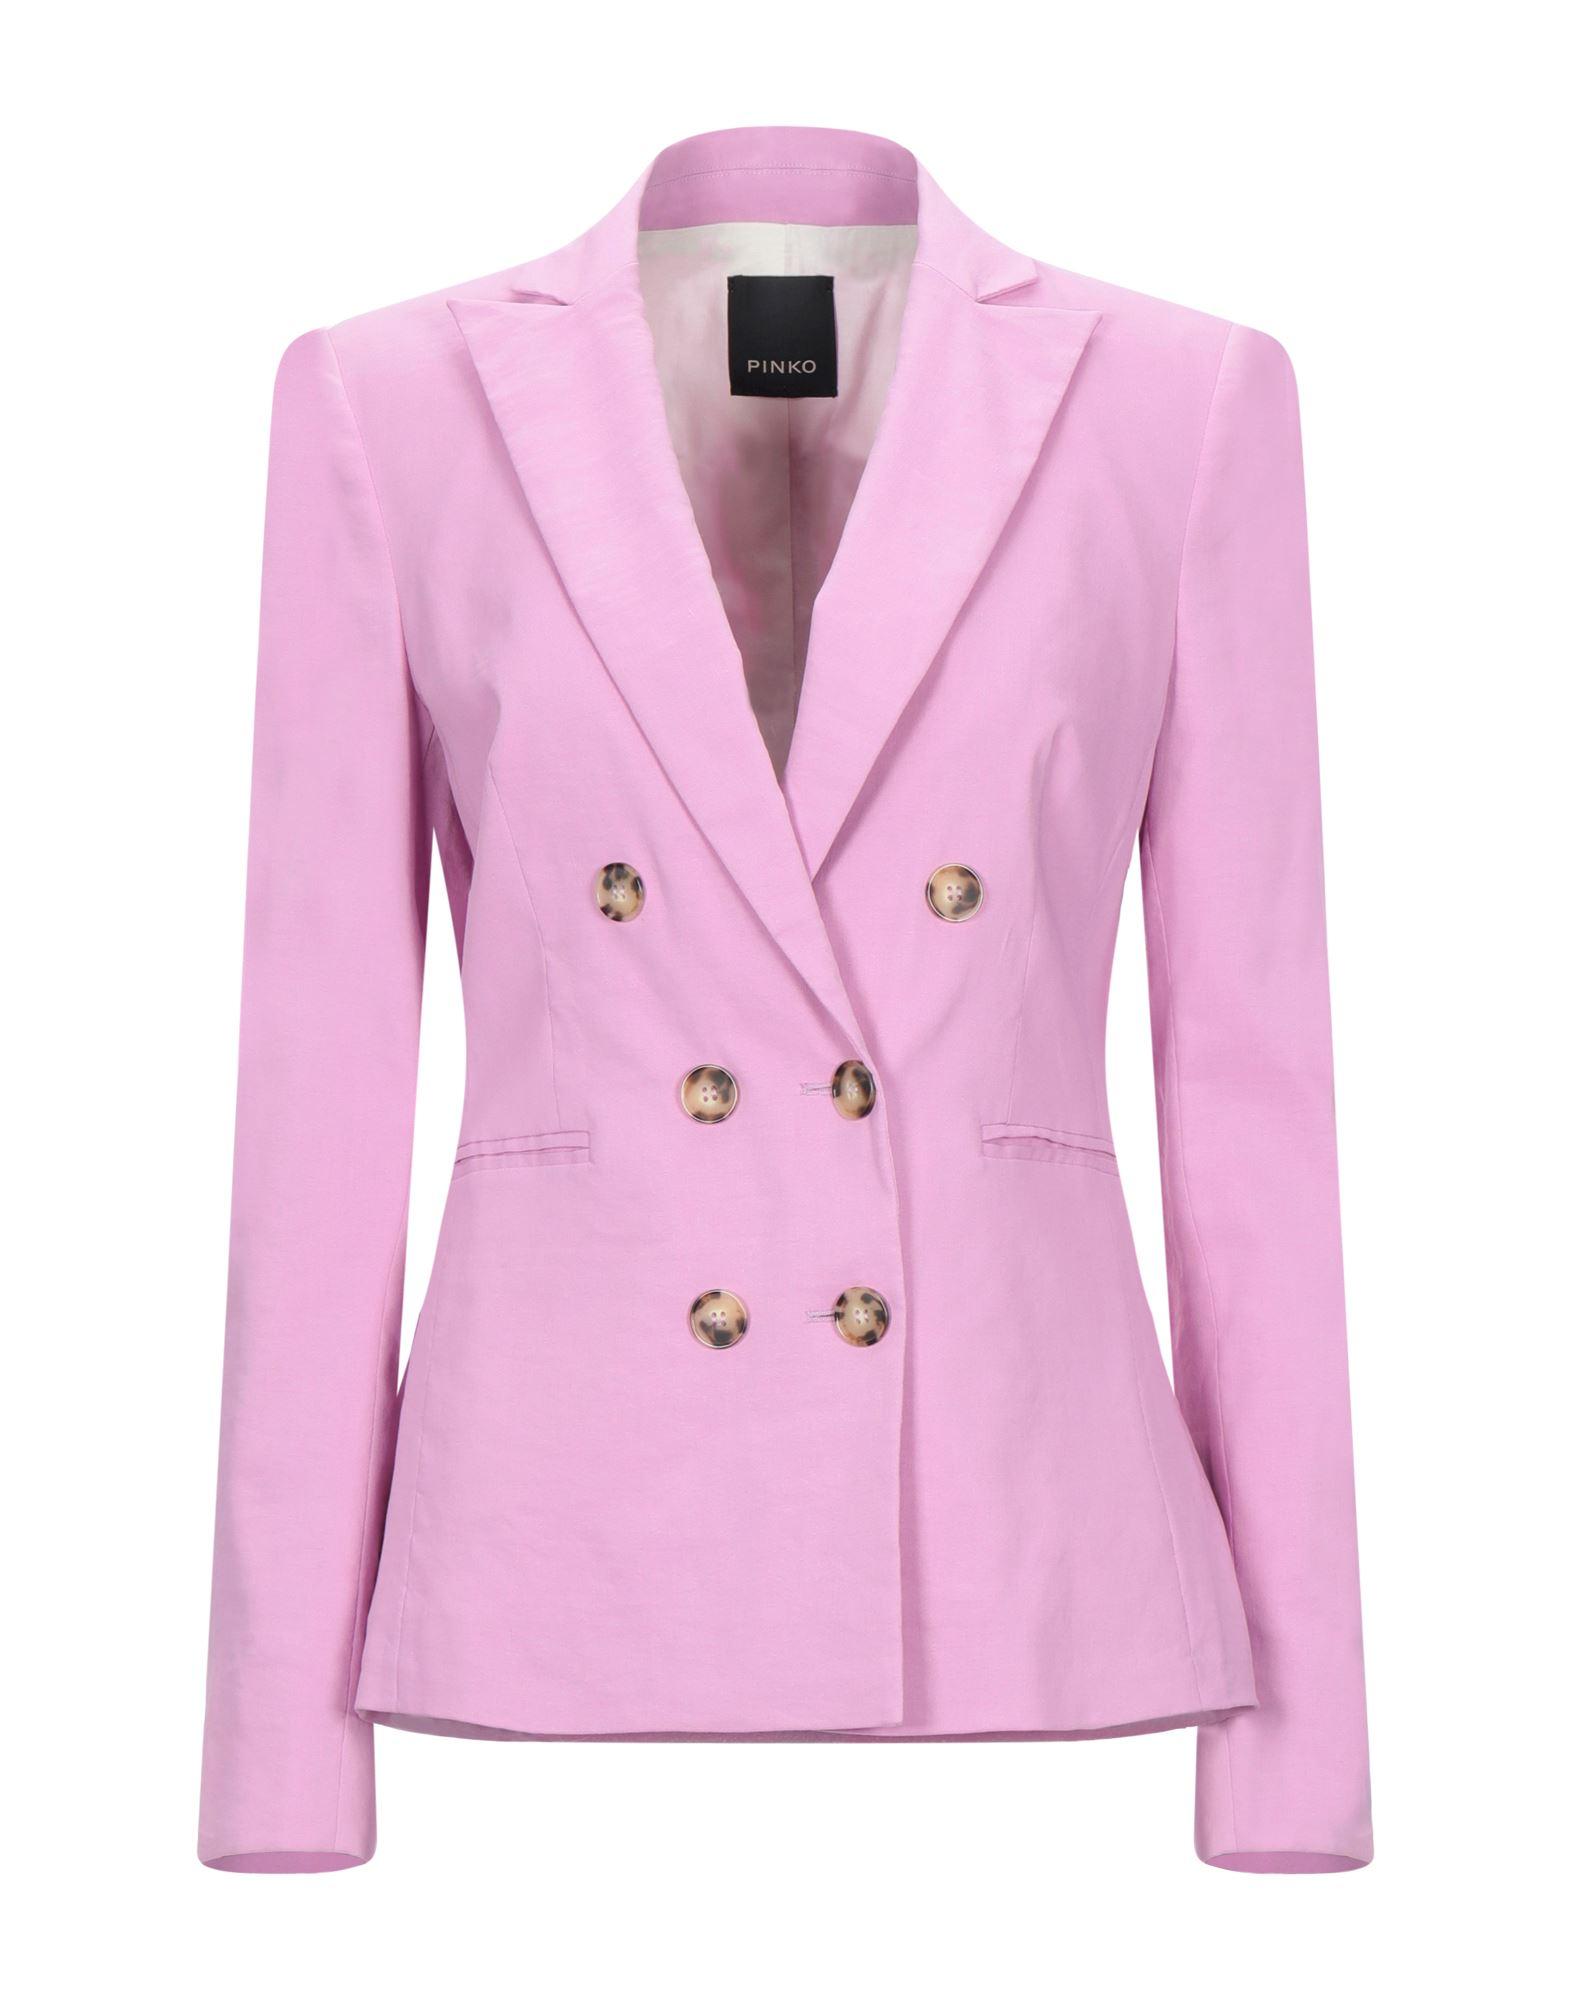 Pinko Suit Jacket, Plain Pattern in Light Purple (Pink) - Lyst